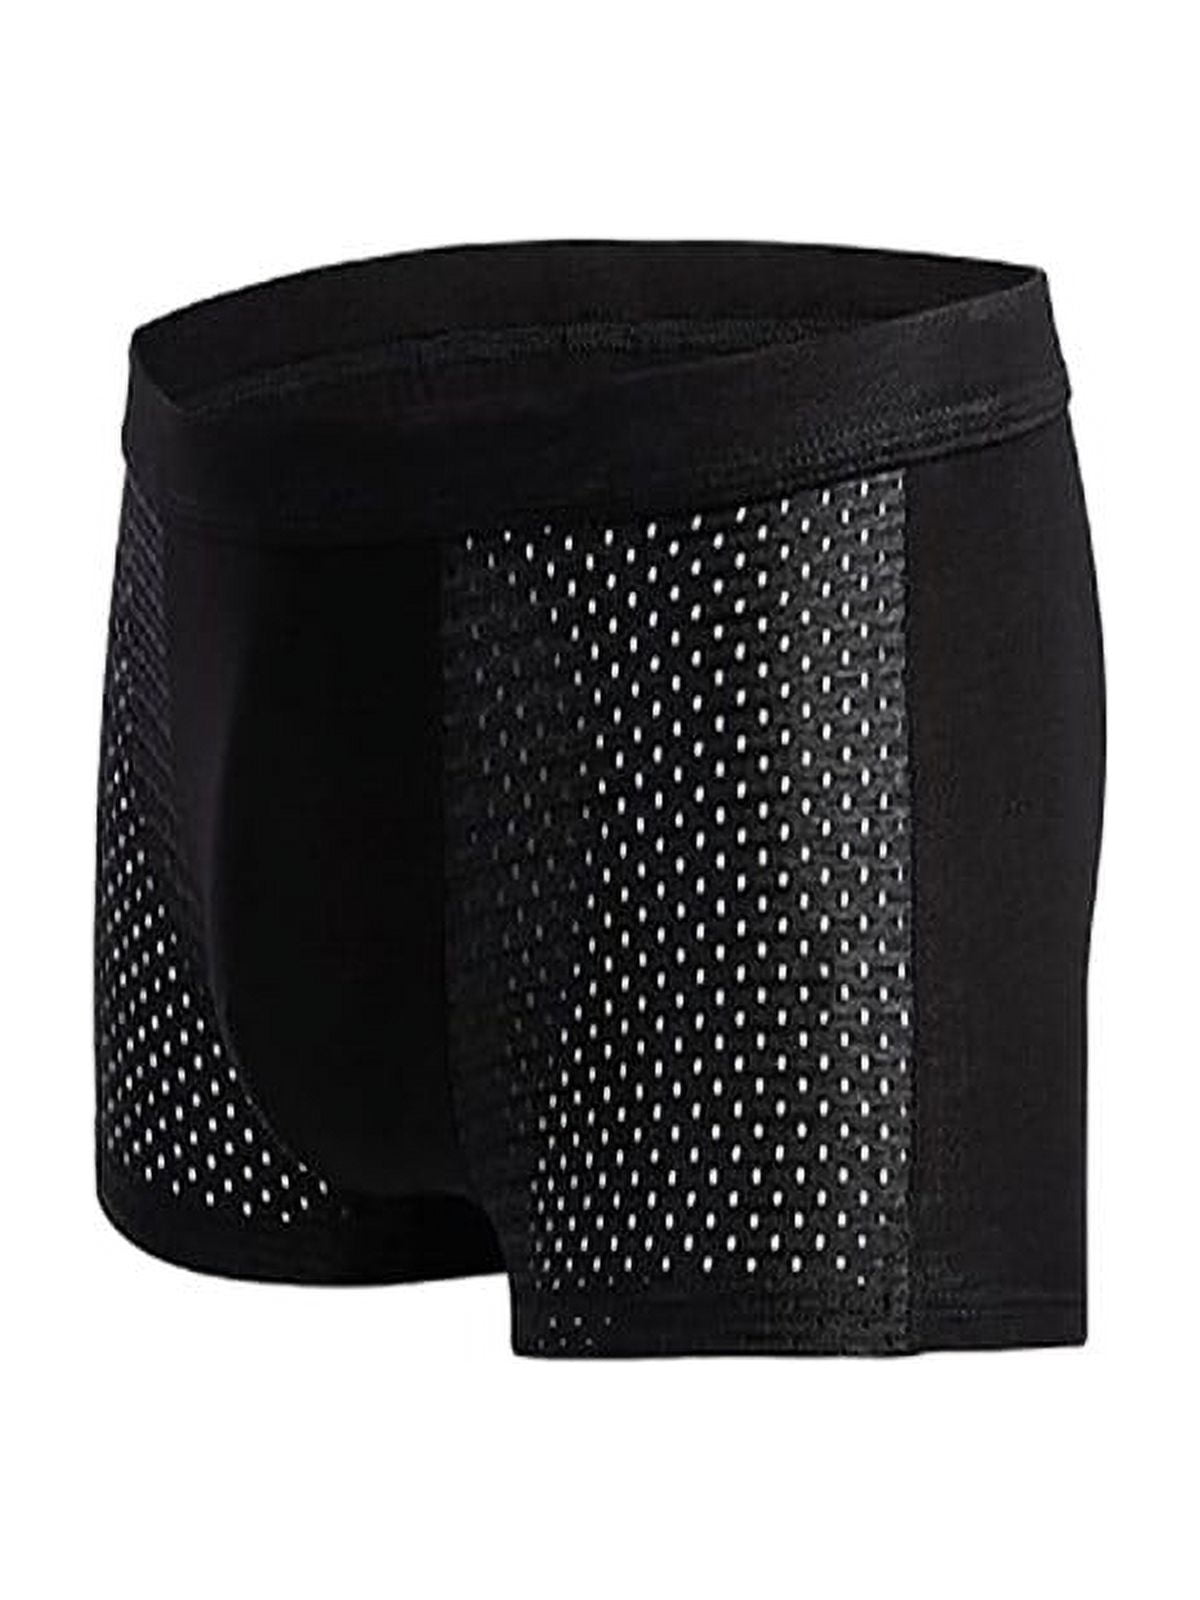 Men Sexy Ice Mesh Hole Underwear Soft Mid Waist Boxer Briefs Nightwear 